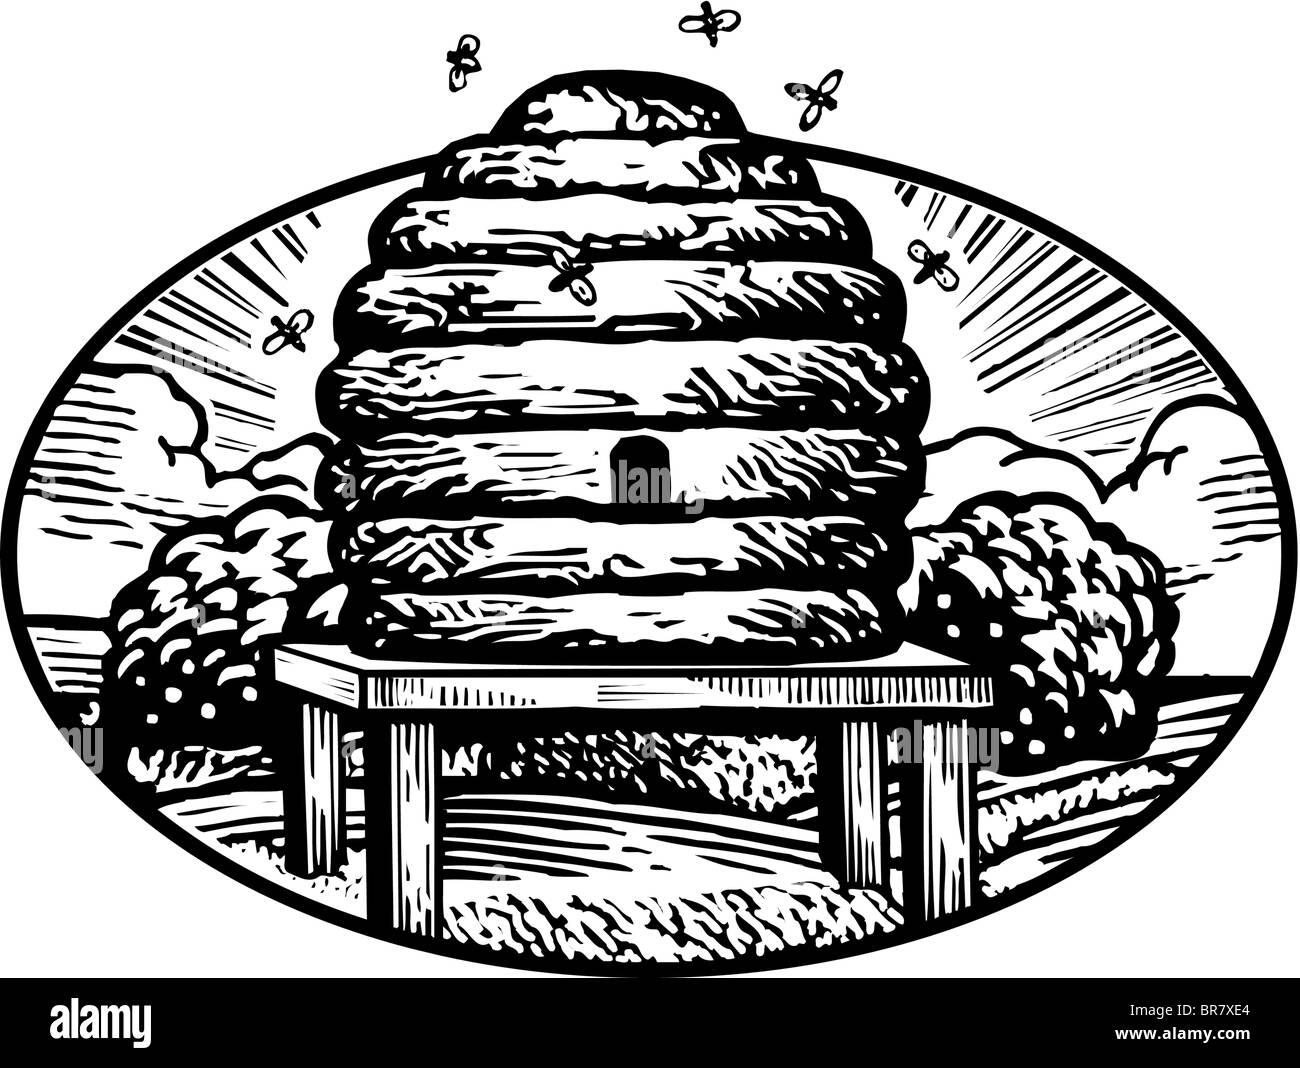 Dessin d'une ruche dessiné en noir et blanc Banque D'Images